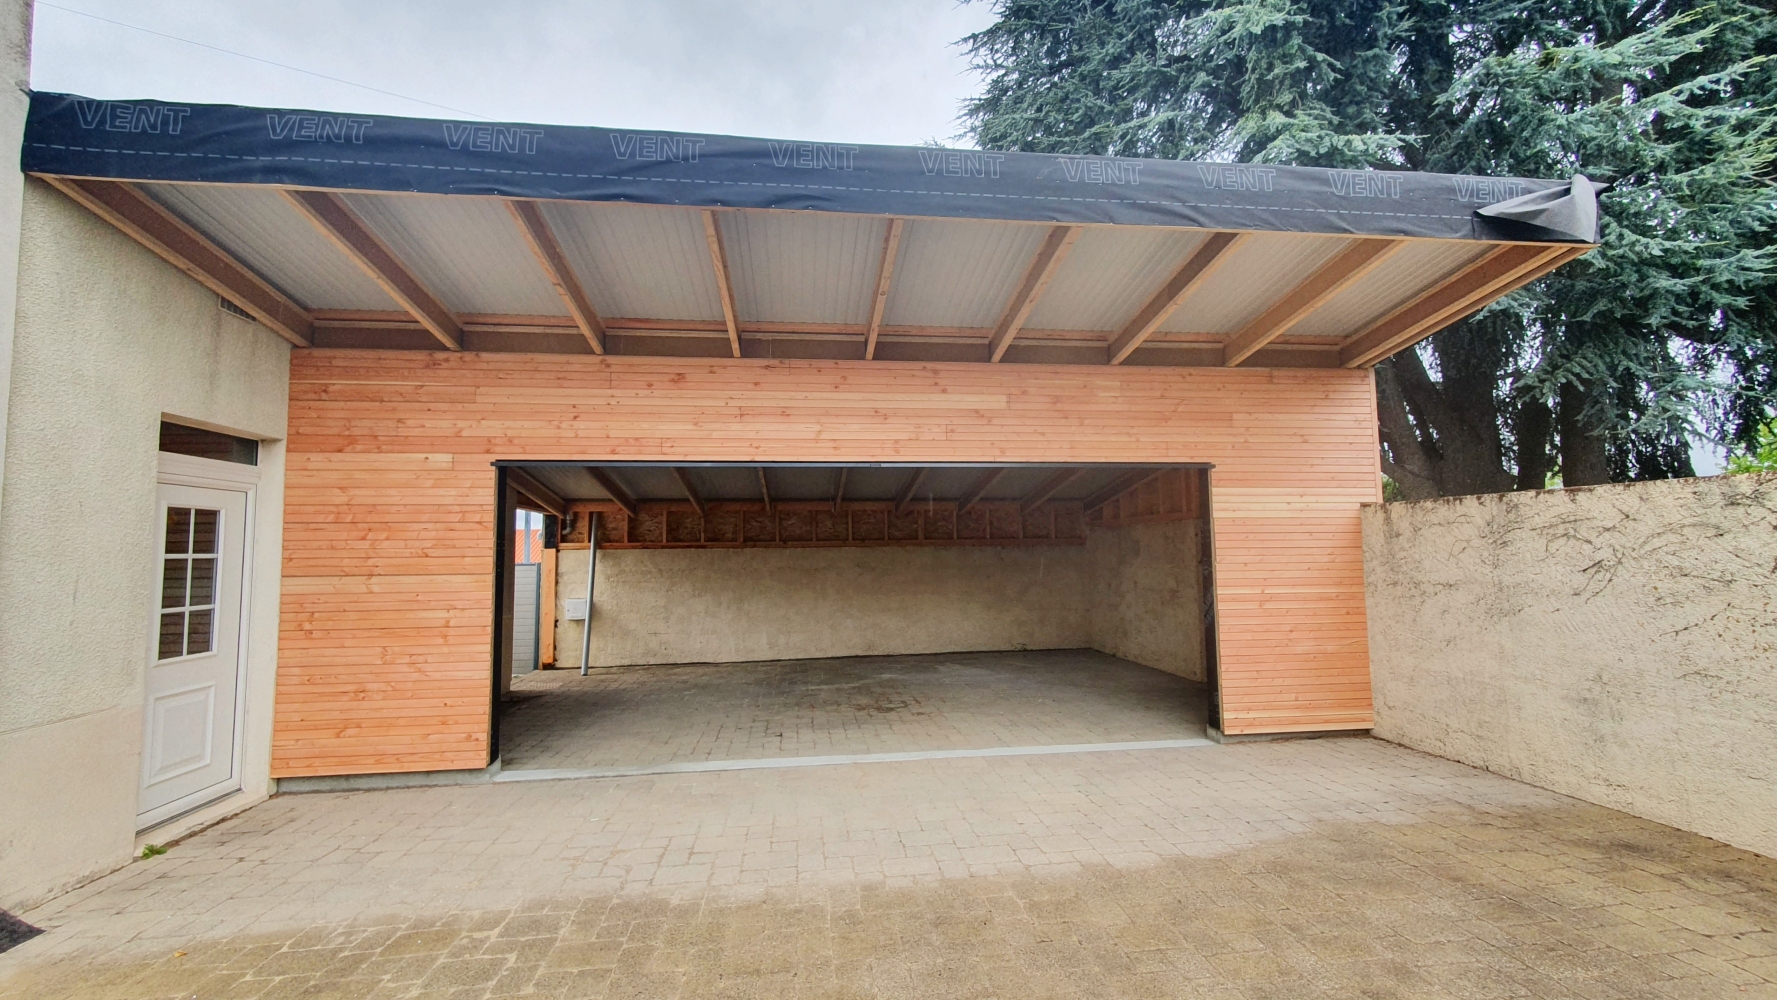 Création d'une extension garage à Vertou (44) - Vue 1